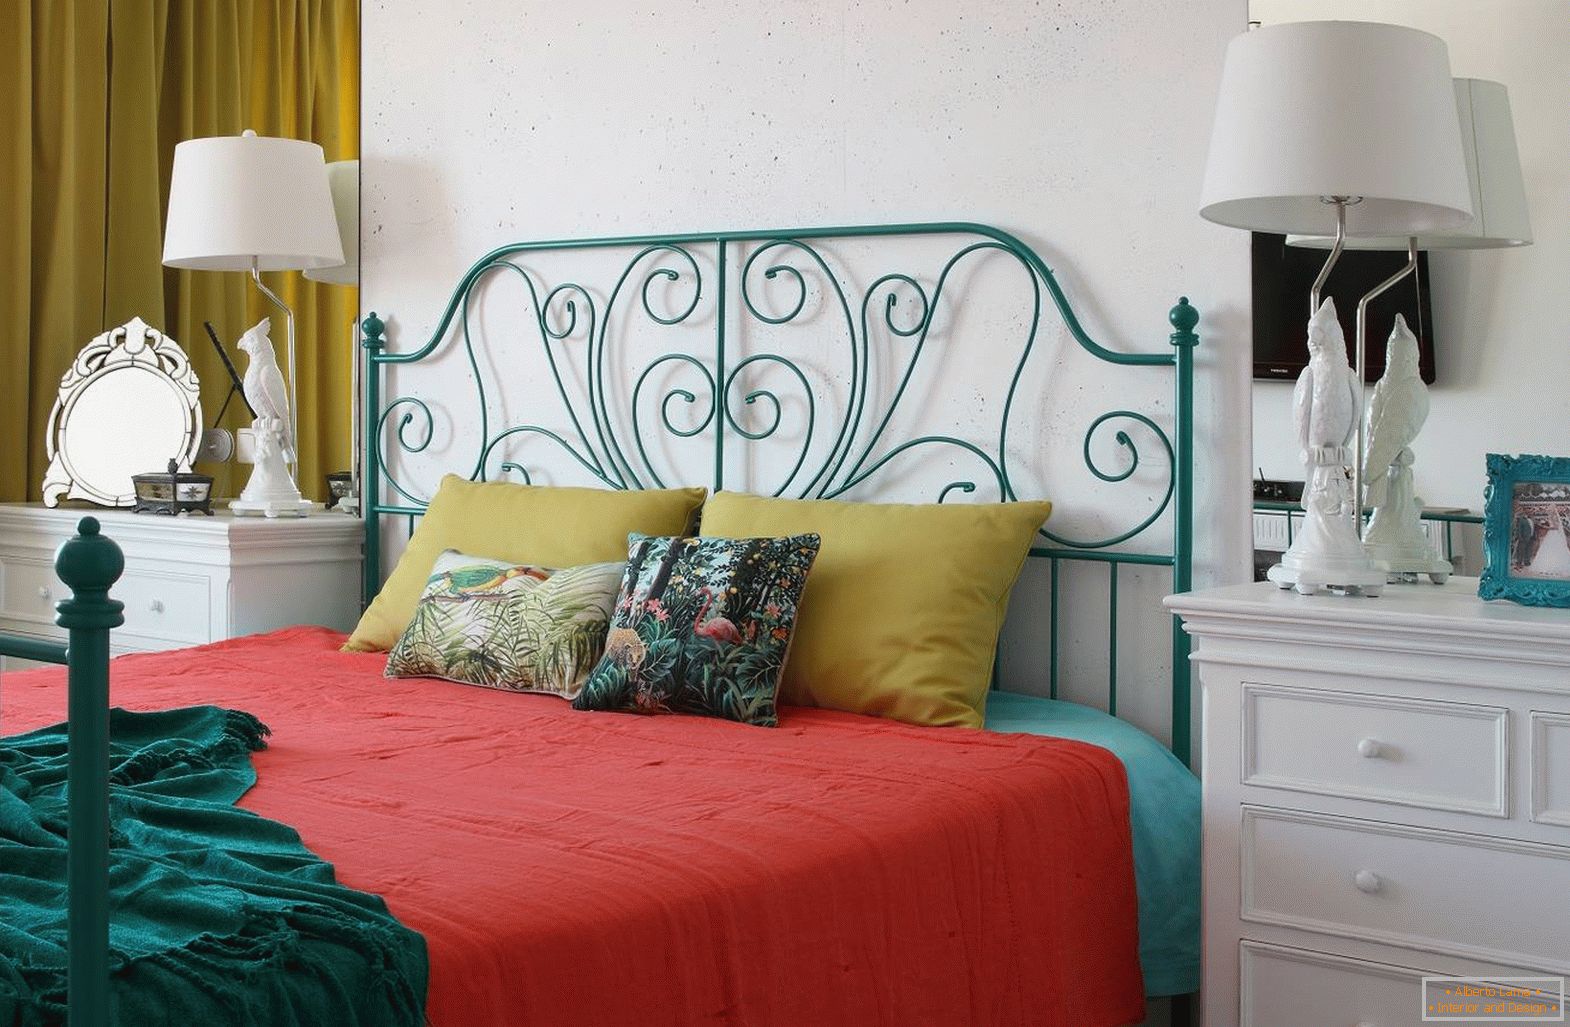 A hálószoba с кроватью в стиле 60-х